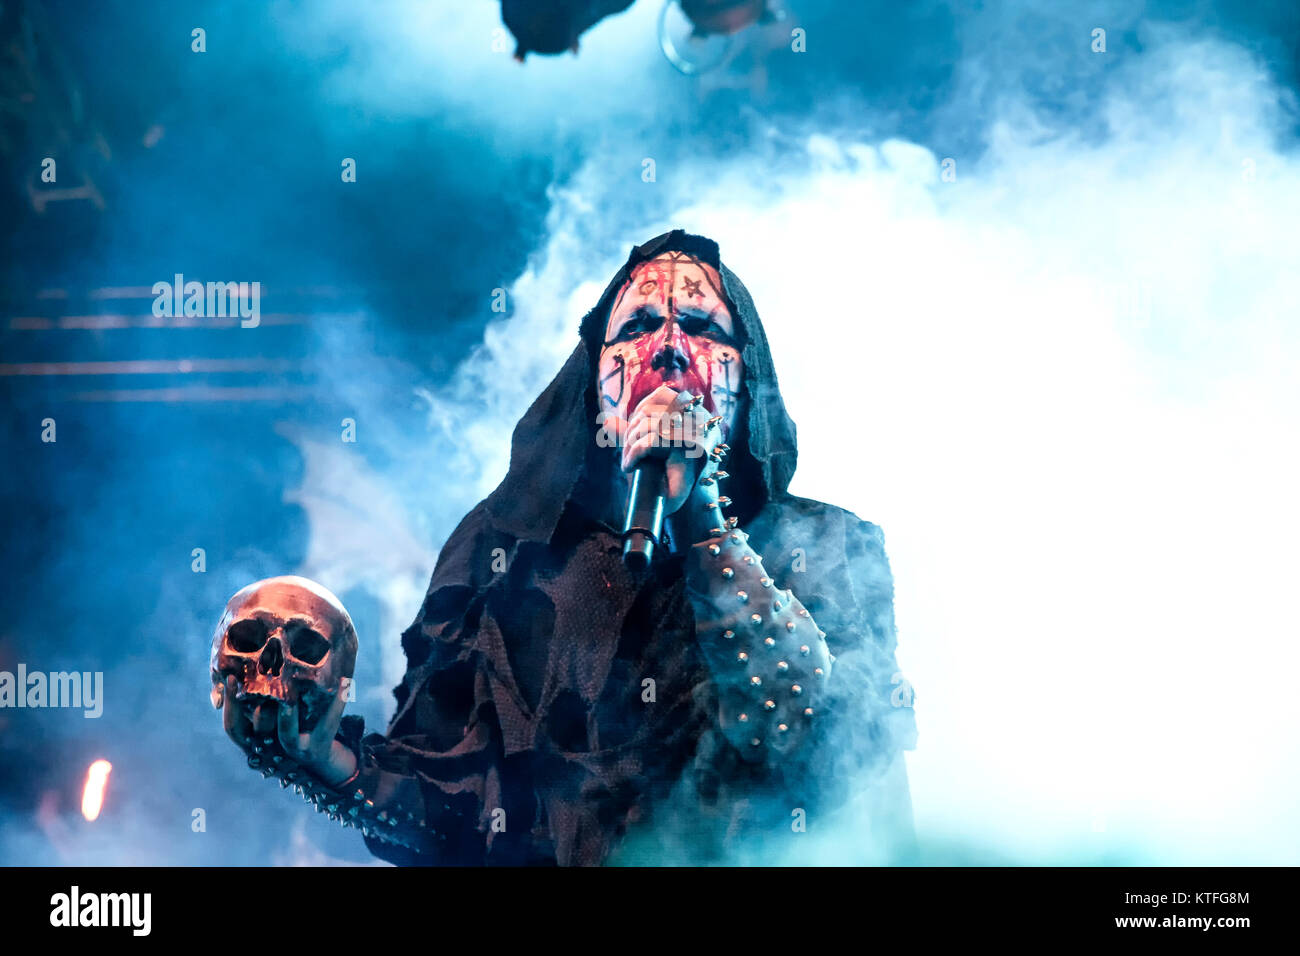 Il Norvegese black metal band Mayhem esegue un concerto dal vivo presso il norvegese music festival Øyafestivalen 2014. Qui la cantante Attila Csihar è visto dal vivo sul palco. Norvegia, 08/08 2014. Foto Stock